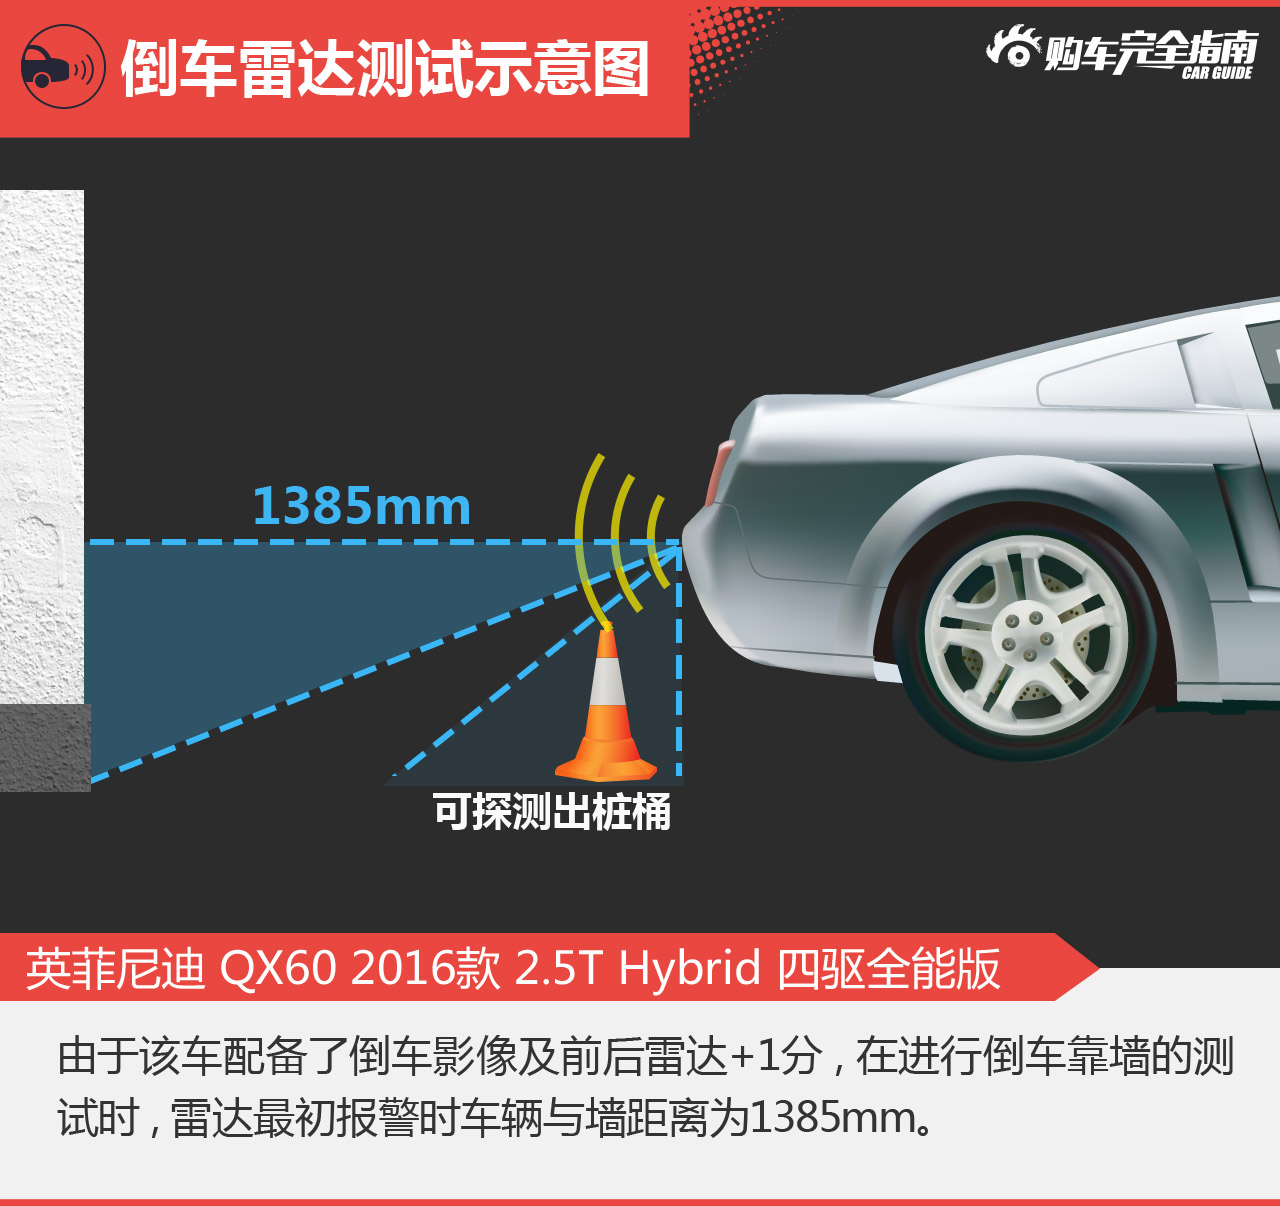 英菲尼迪 QX60 2016款 2.5T Hybrid 四驱全能版